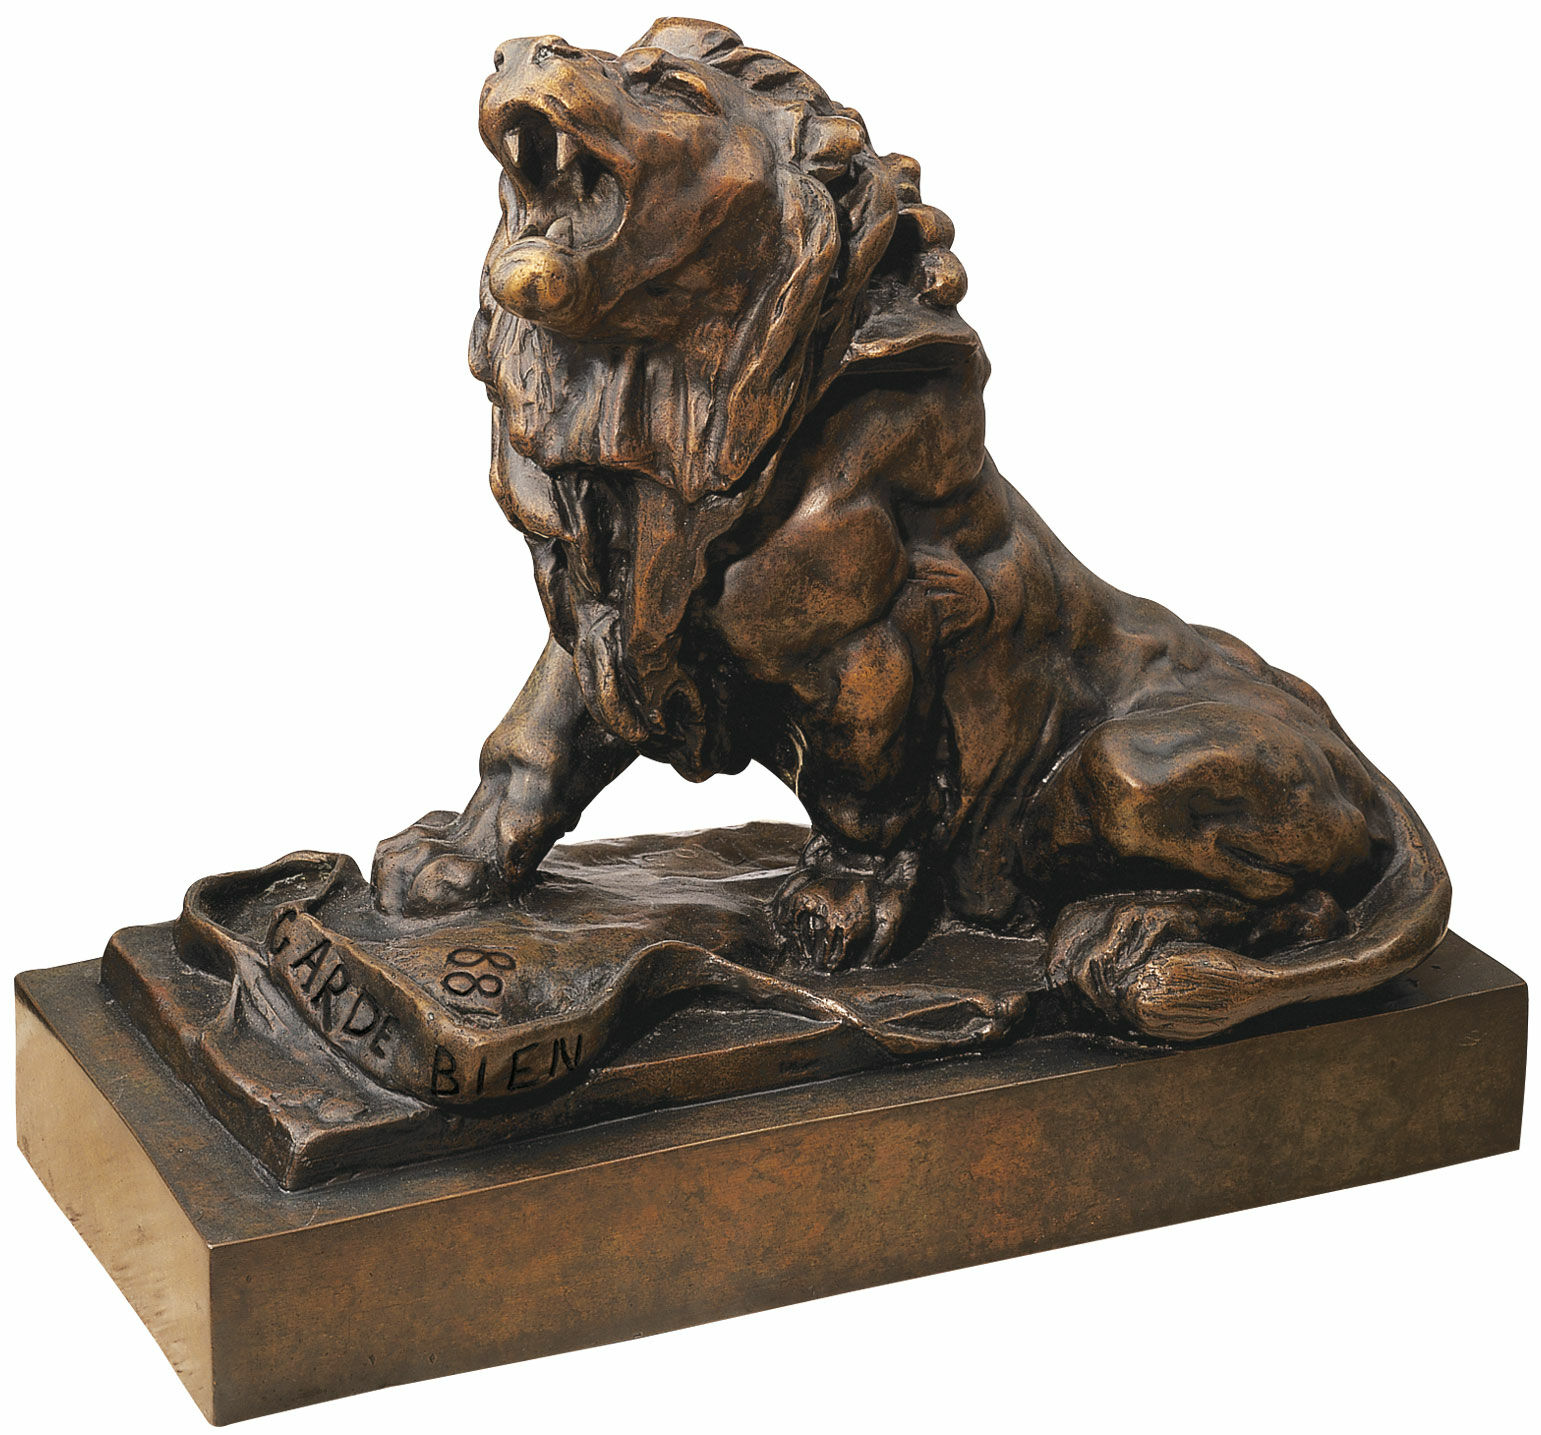 Skulptur "Den grædende løve" (Le lion qui pleure), bronzeversion von Auguste Rodin